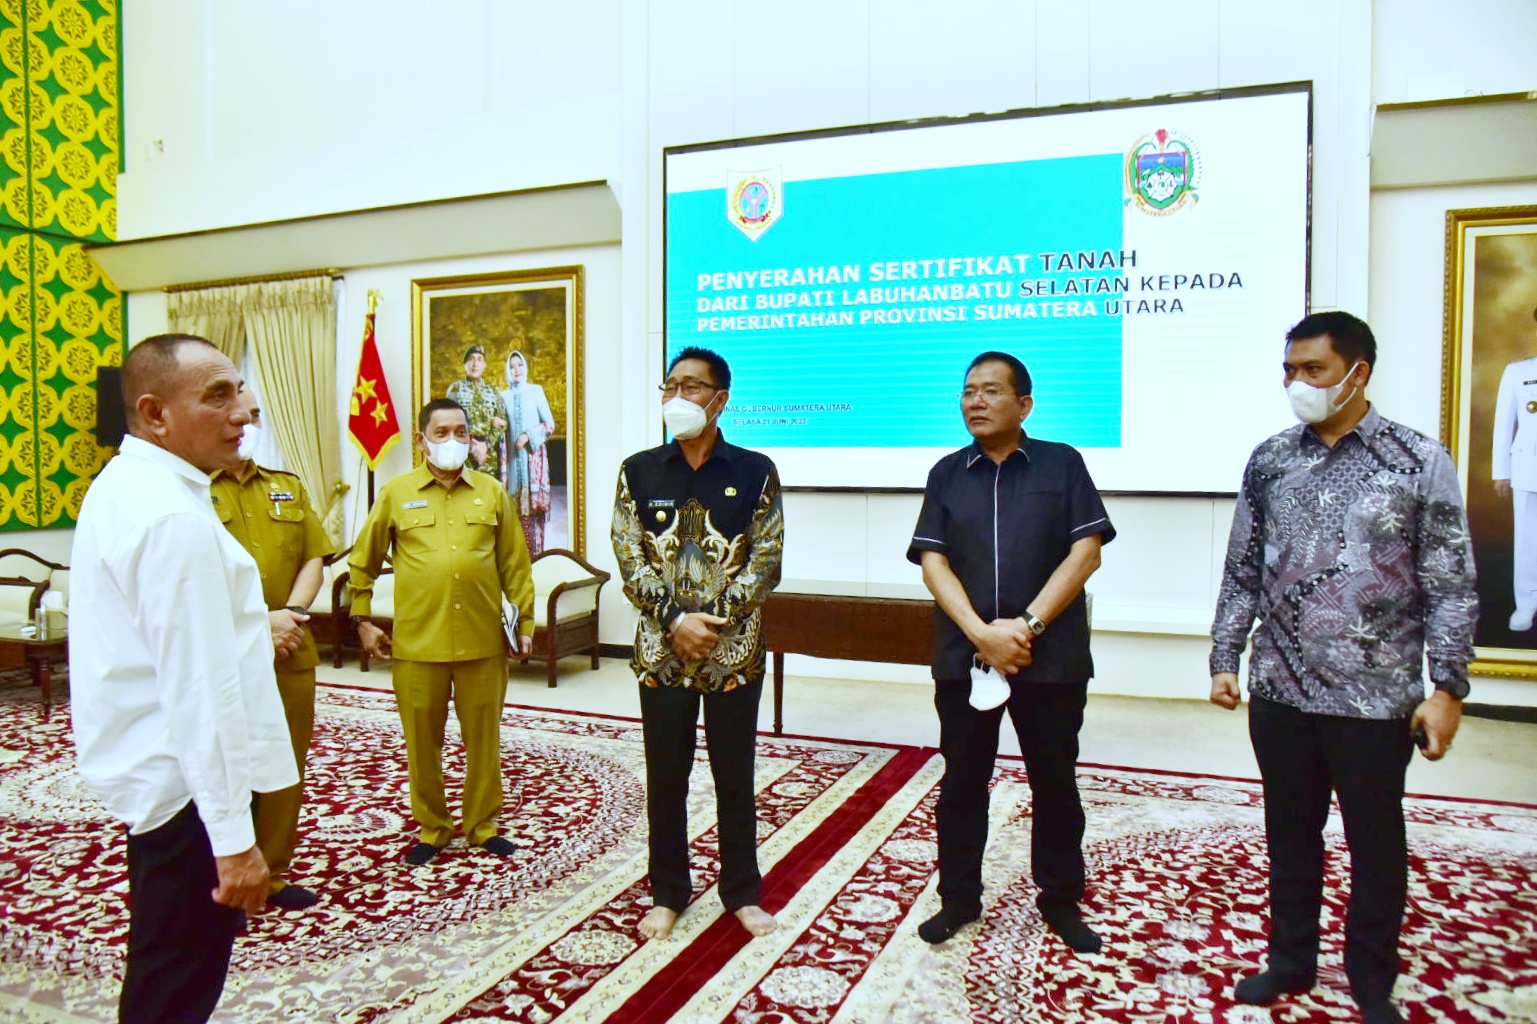 Gubernur Sumatra Utara Edy Rahmayadi saat menerima sertifikat lahan hibah dari Pemkab Labuhan Batu Selatan, Medan, Selasa (21/6/2022). / Istimewa